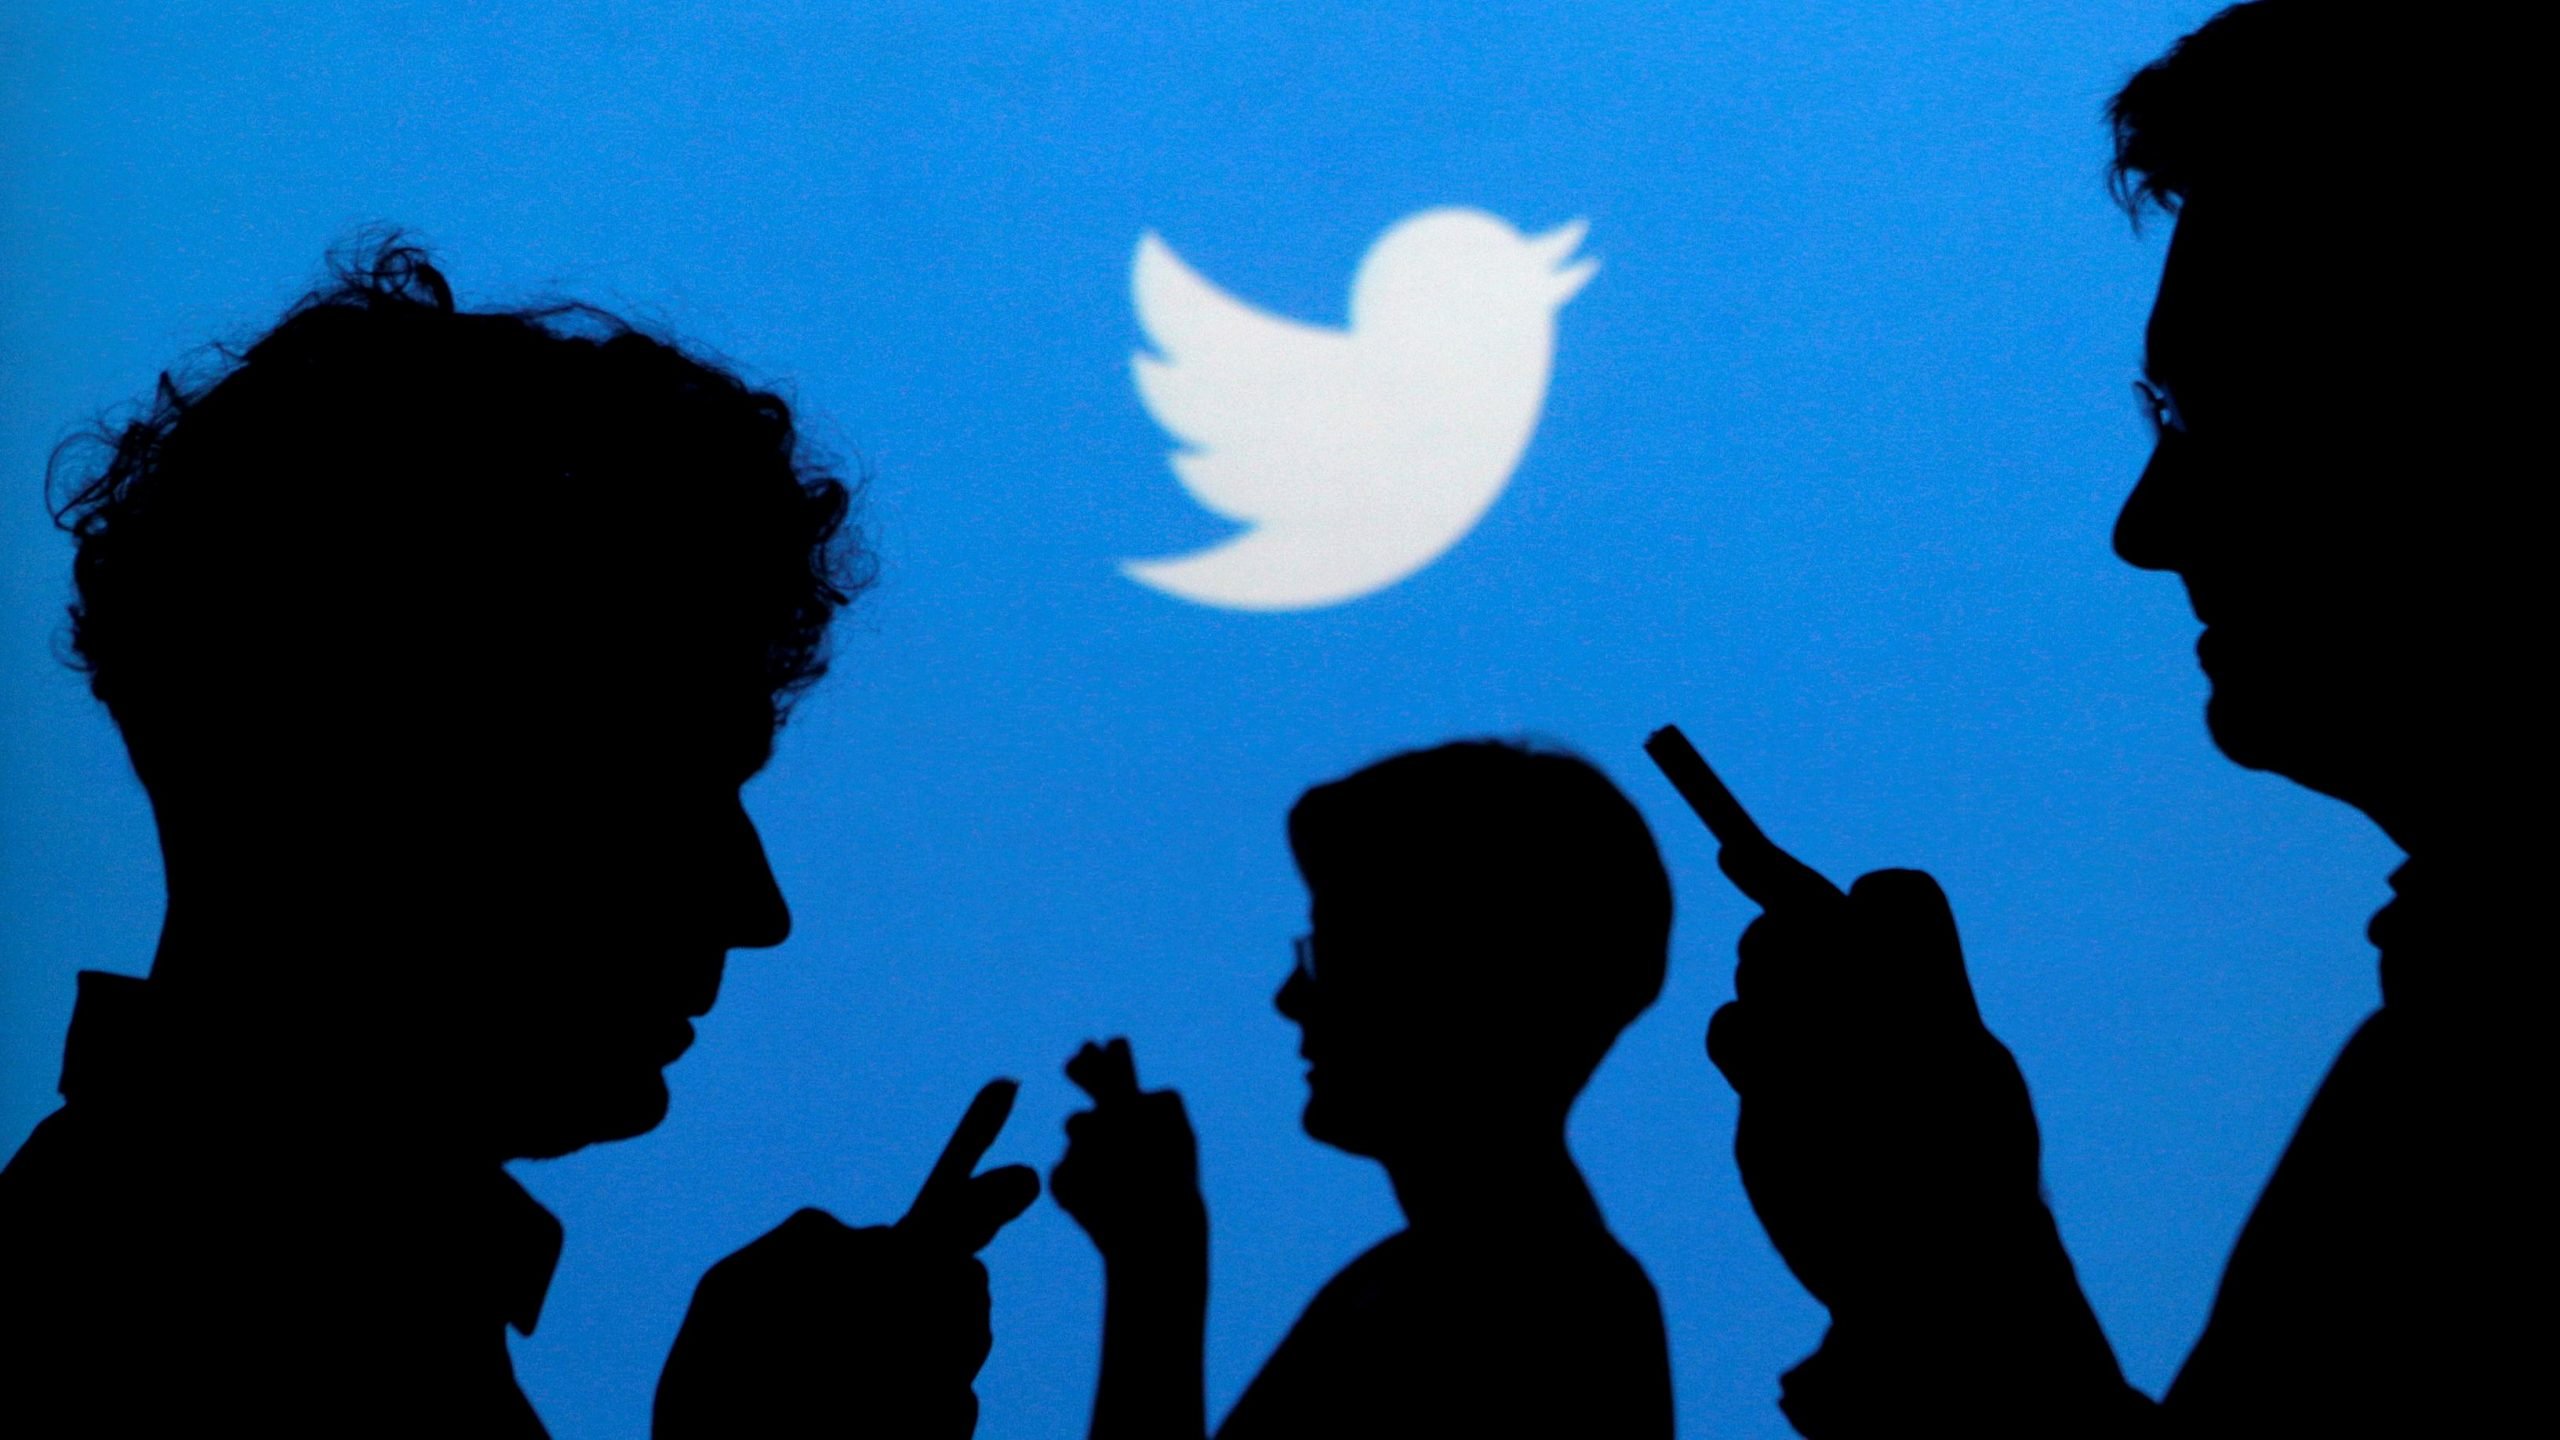 Twitter-ը կհեռացնի լուսանկարներն ու տեսանյութերը, որոնք հրապարակվել են առանց դրանցում պատկերված անձանց համաձայնության